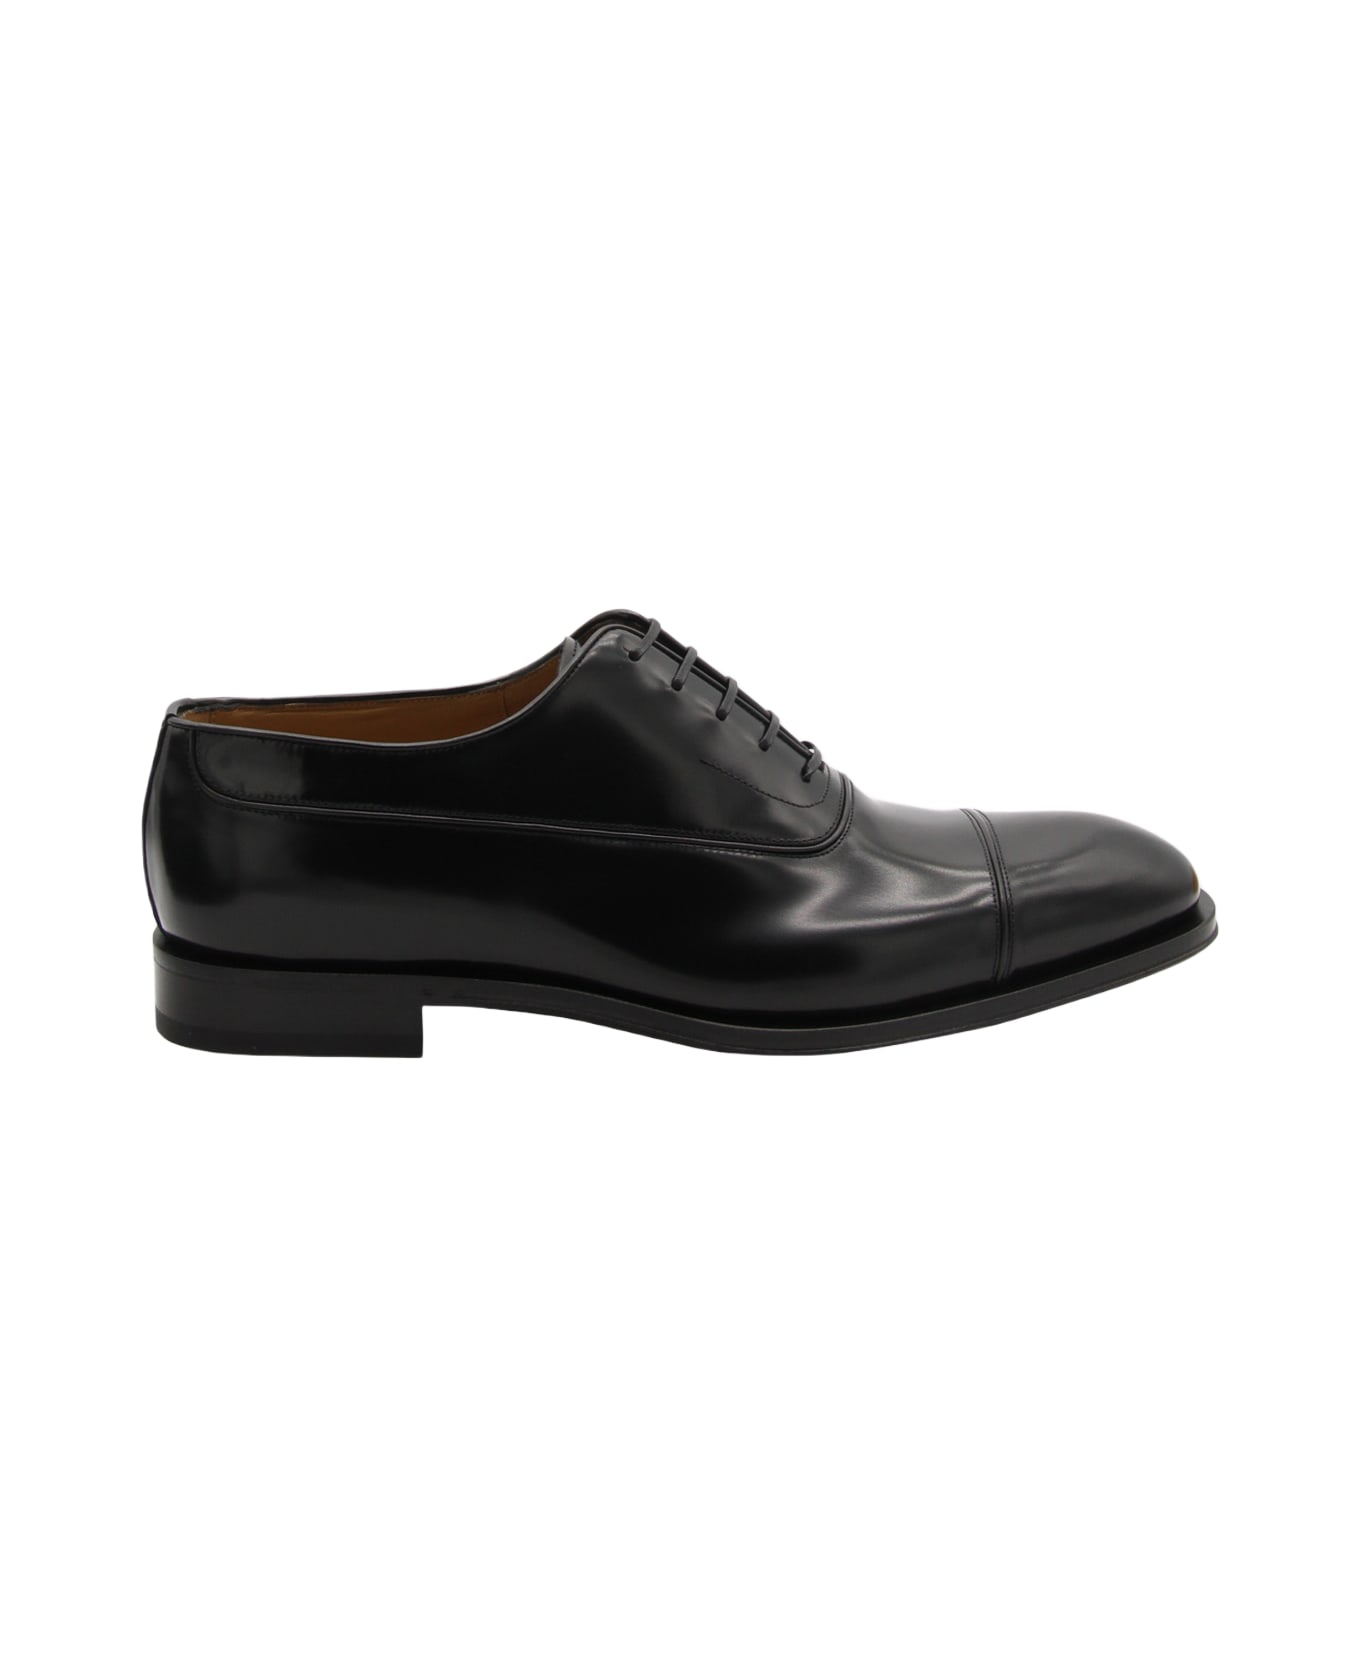 Ferragamo Black Leather Lace Up Shoes - NERO || NERO || NEW BISCOTTO